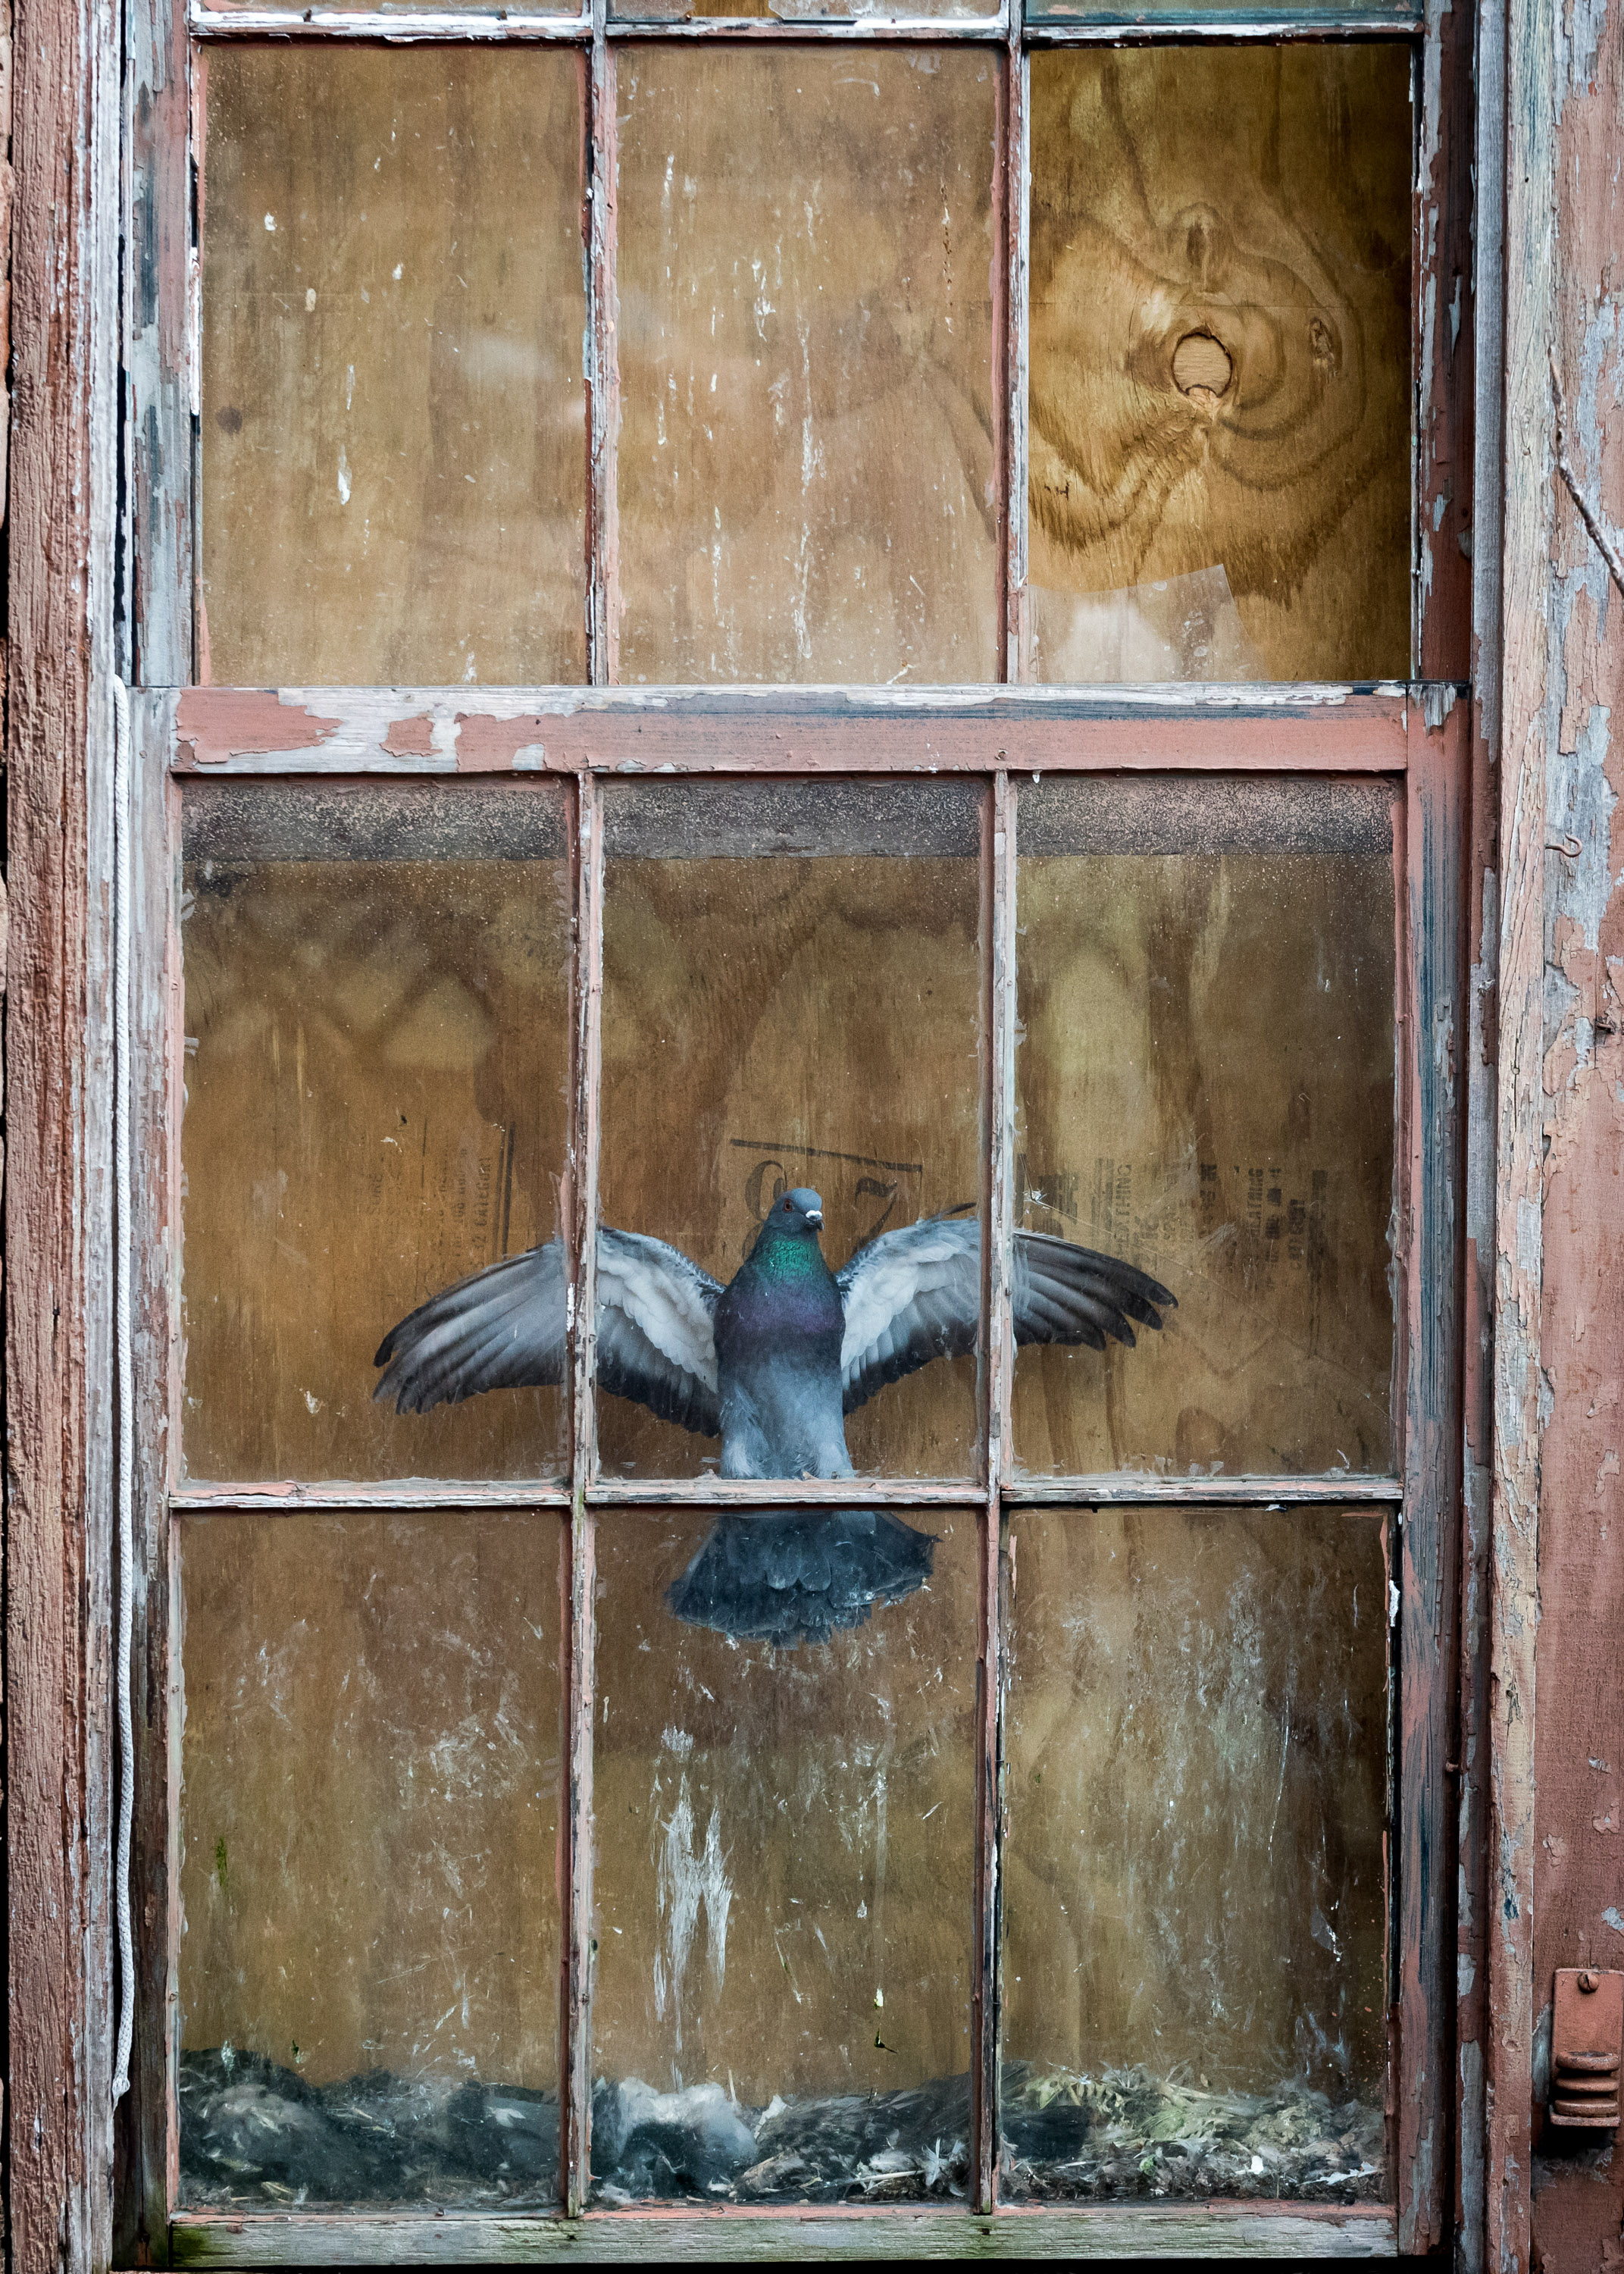 A bird stuck inside a window.